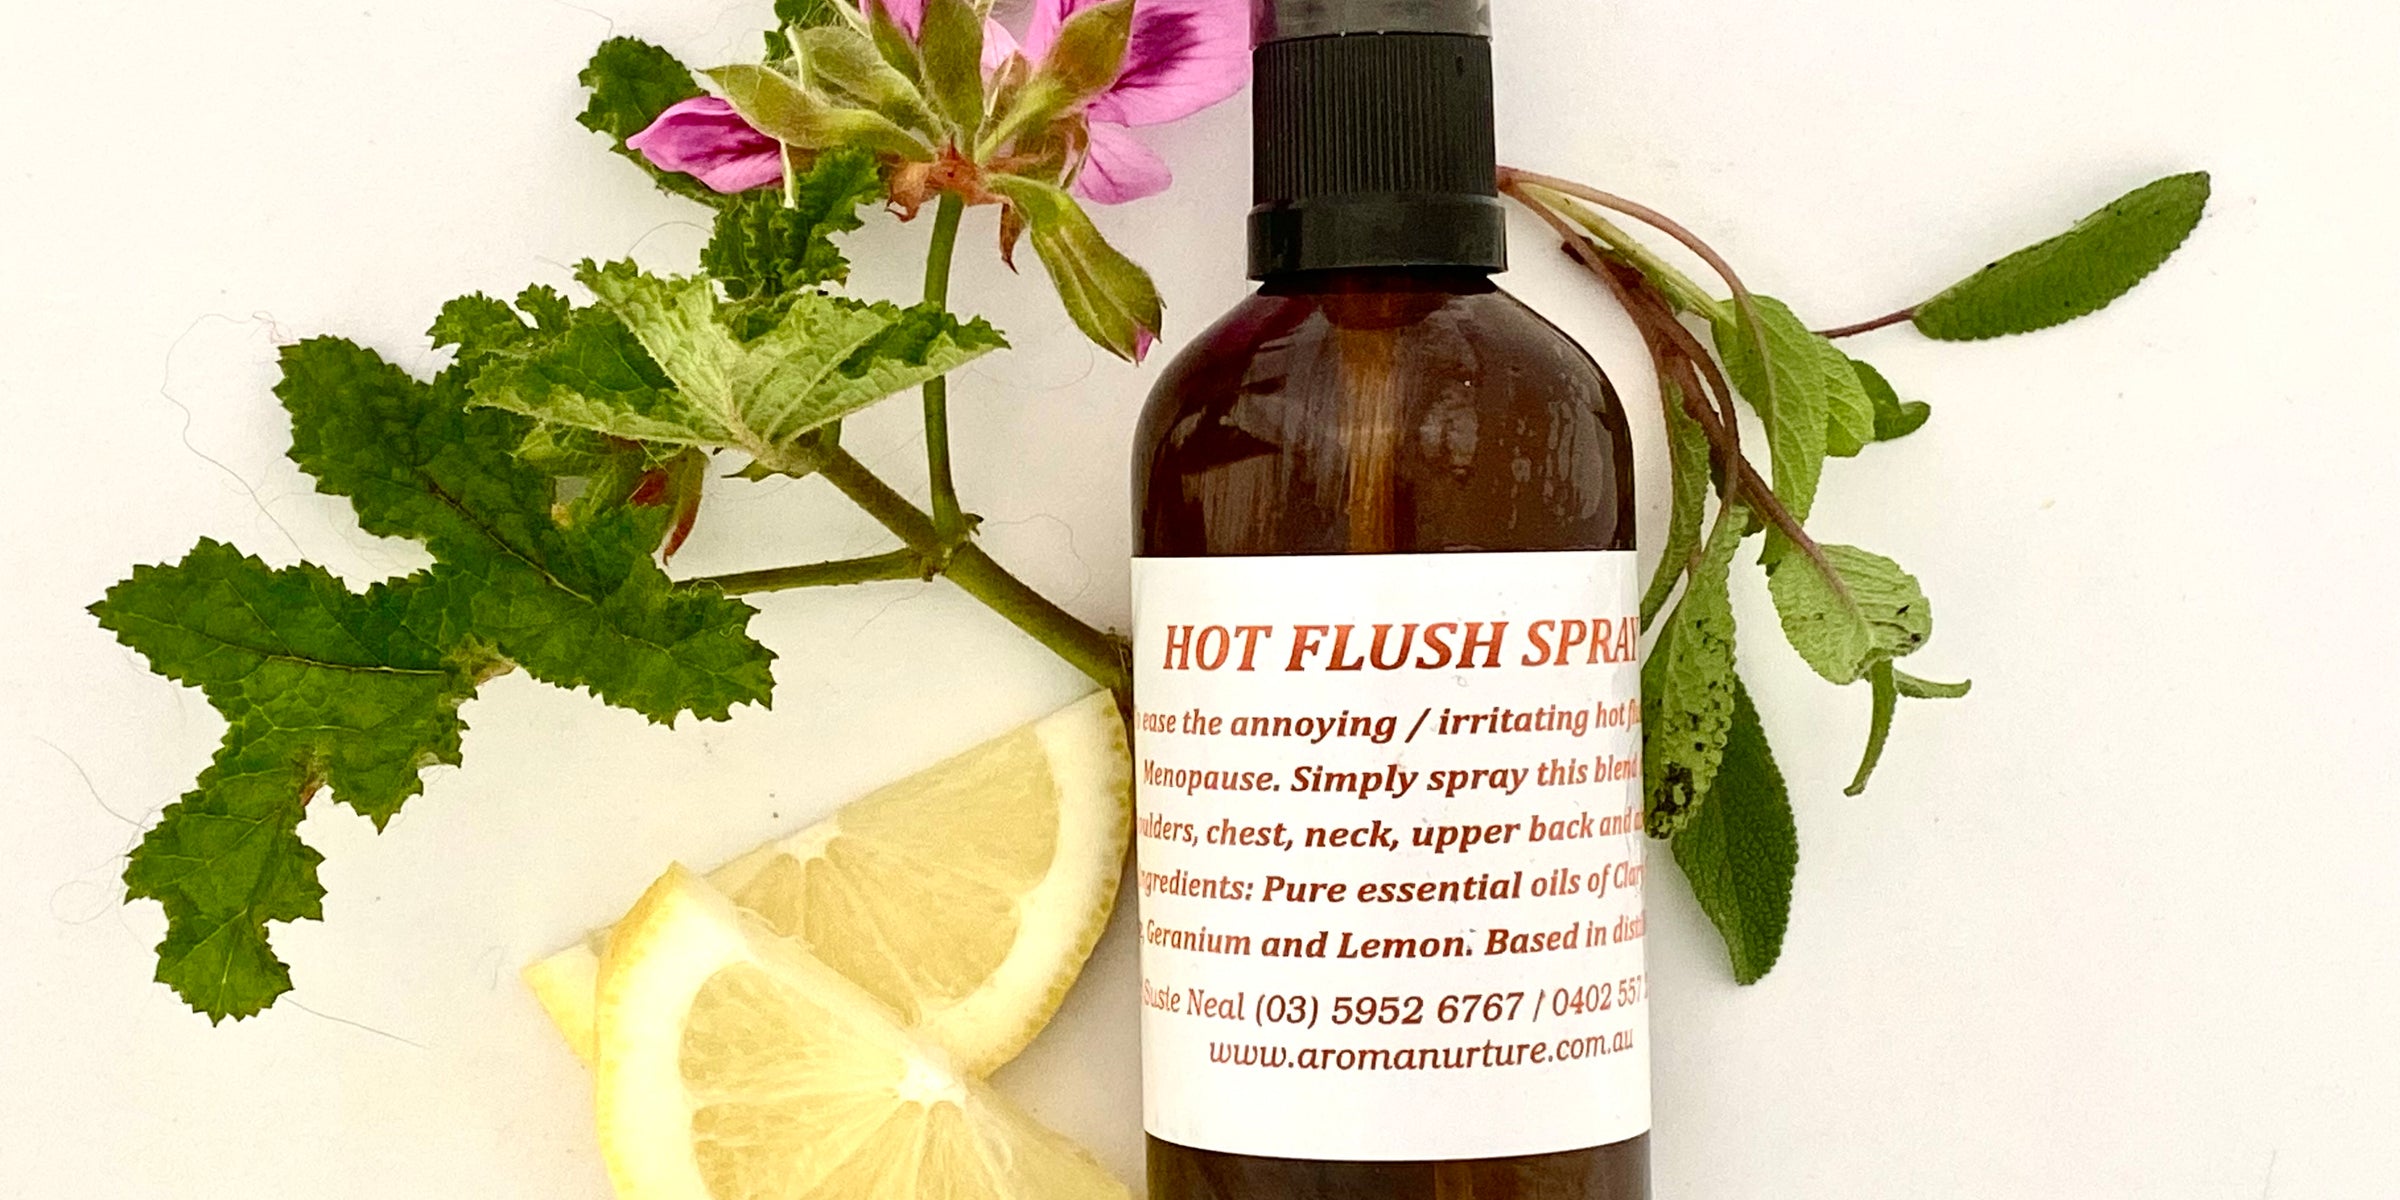 Menopausal  massage oils and sprays.